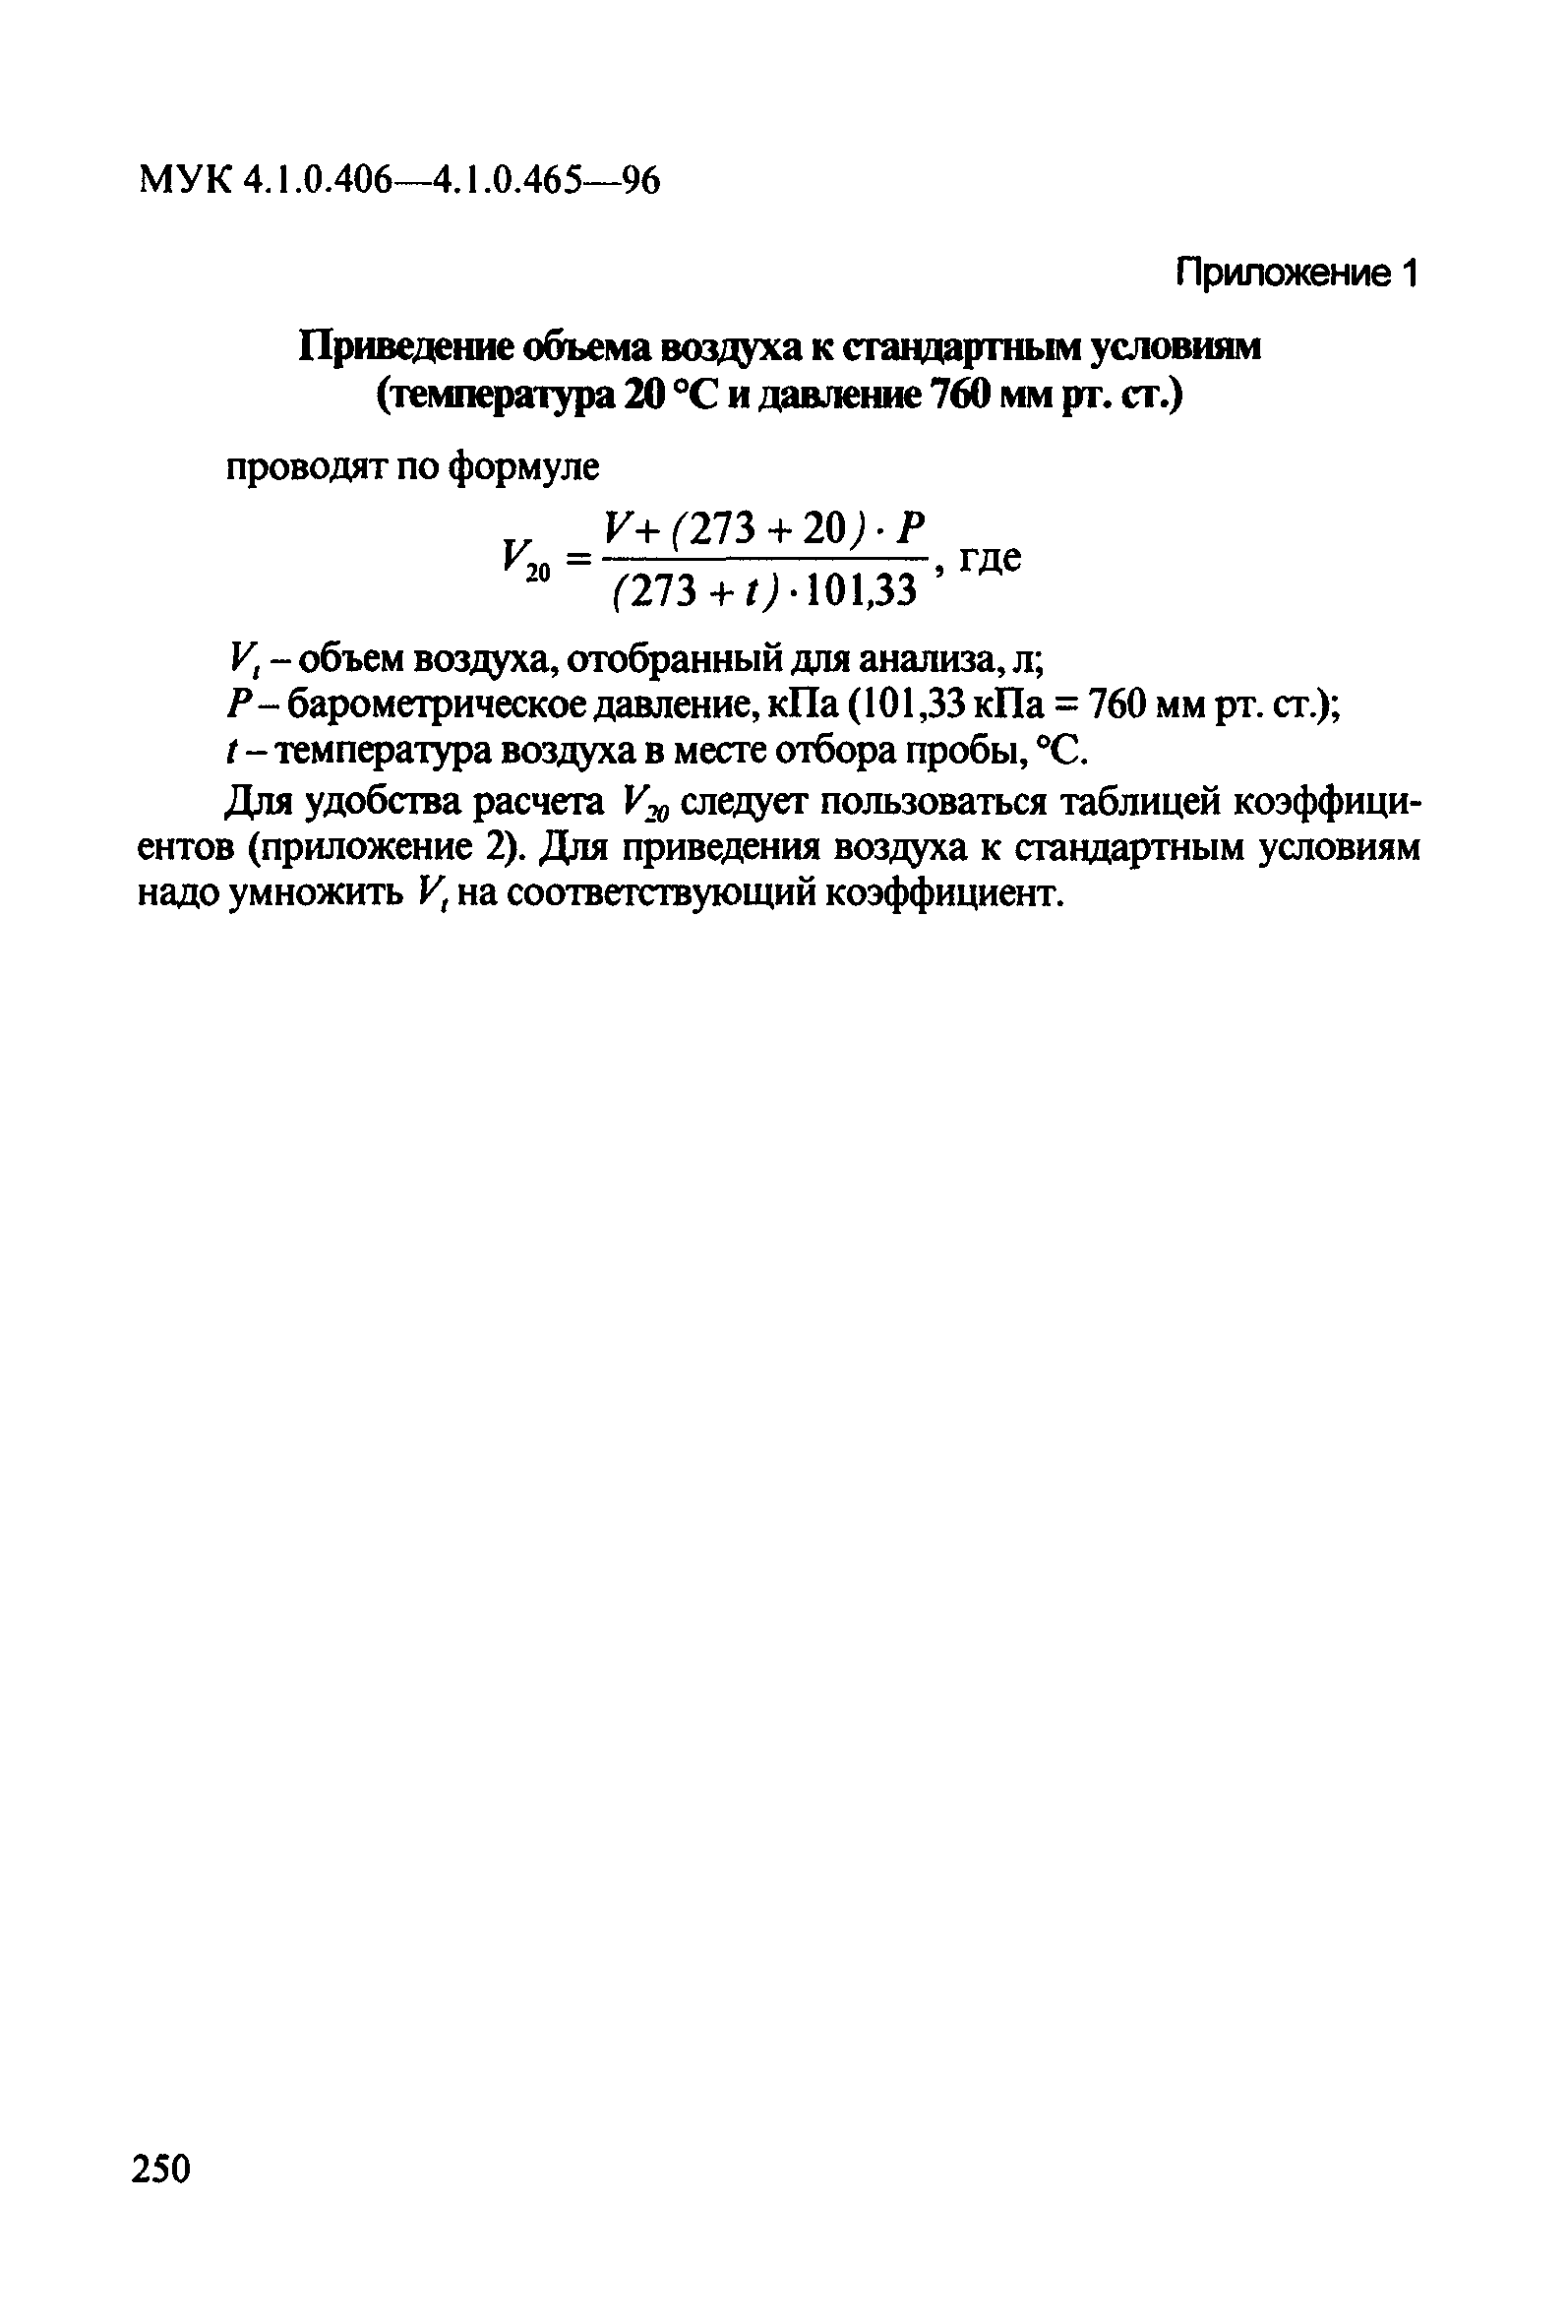 МУК 4.1.0.408-96